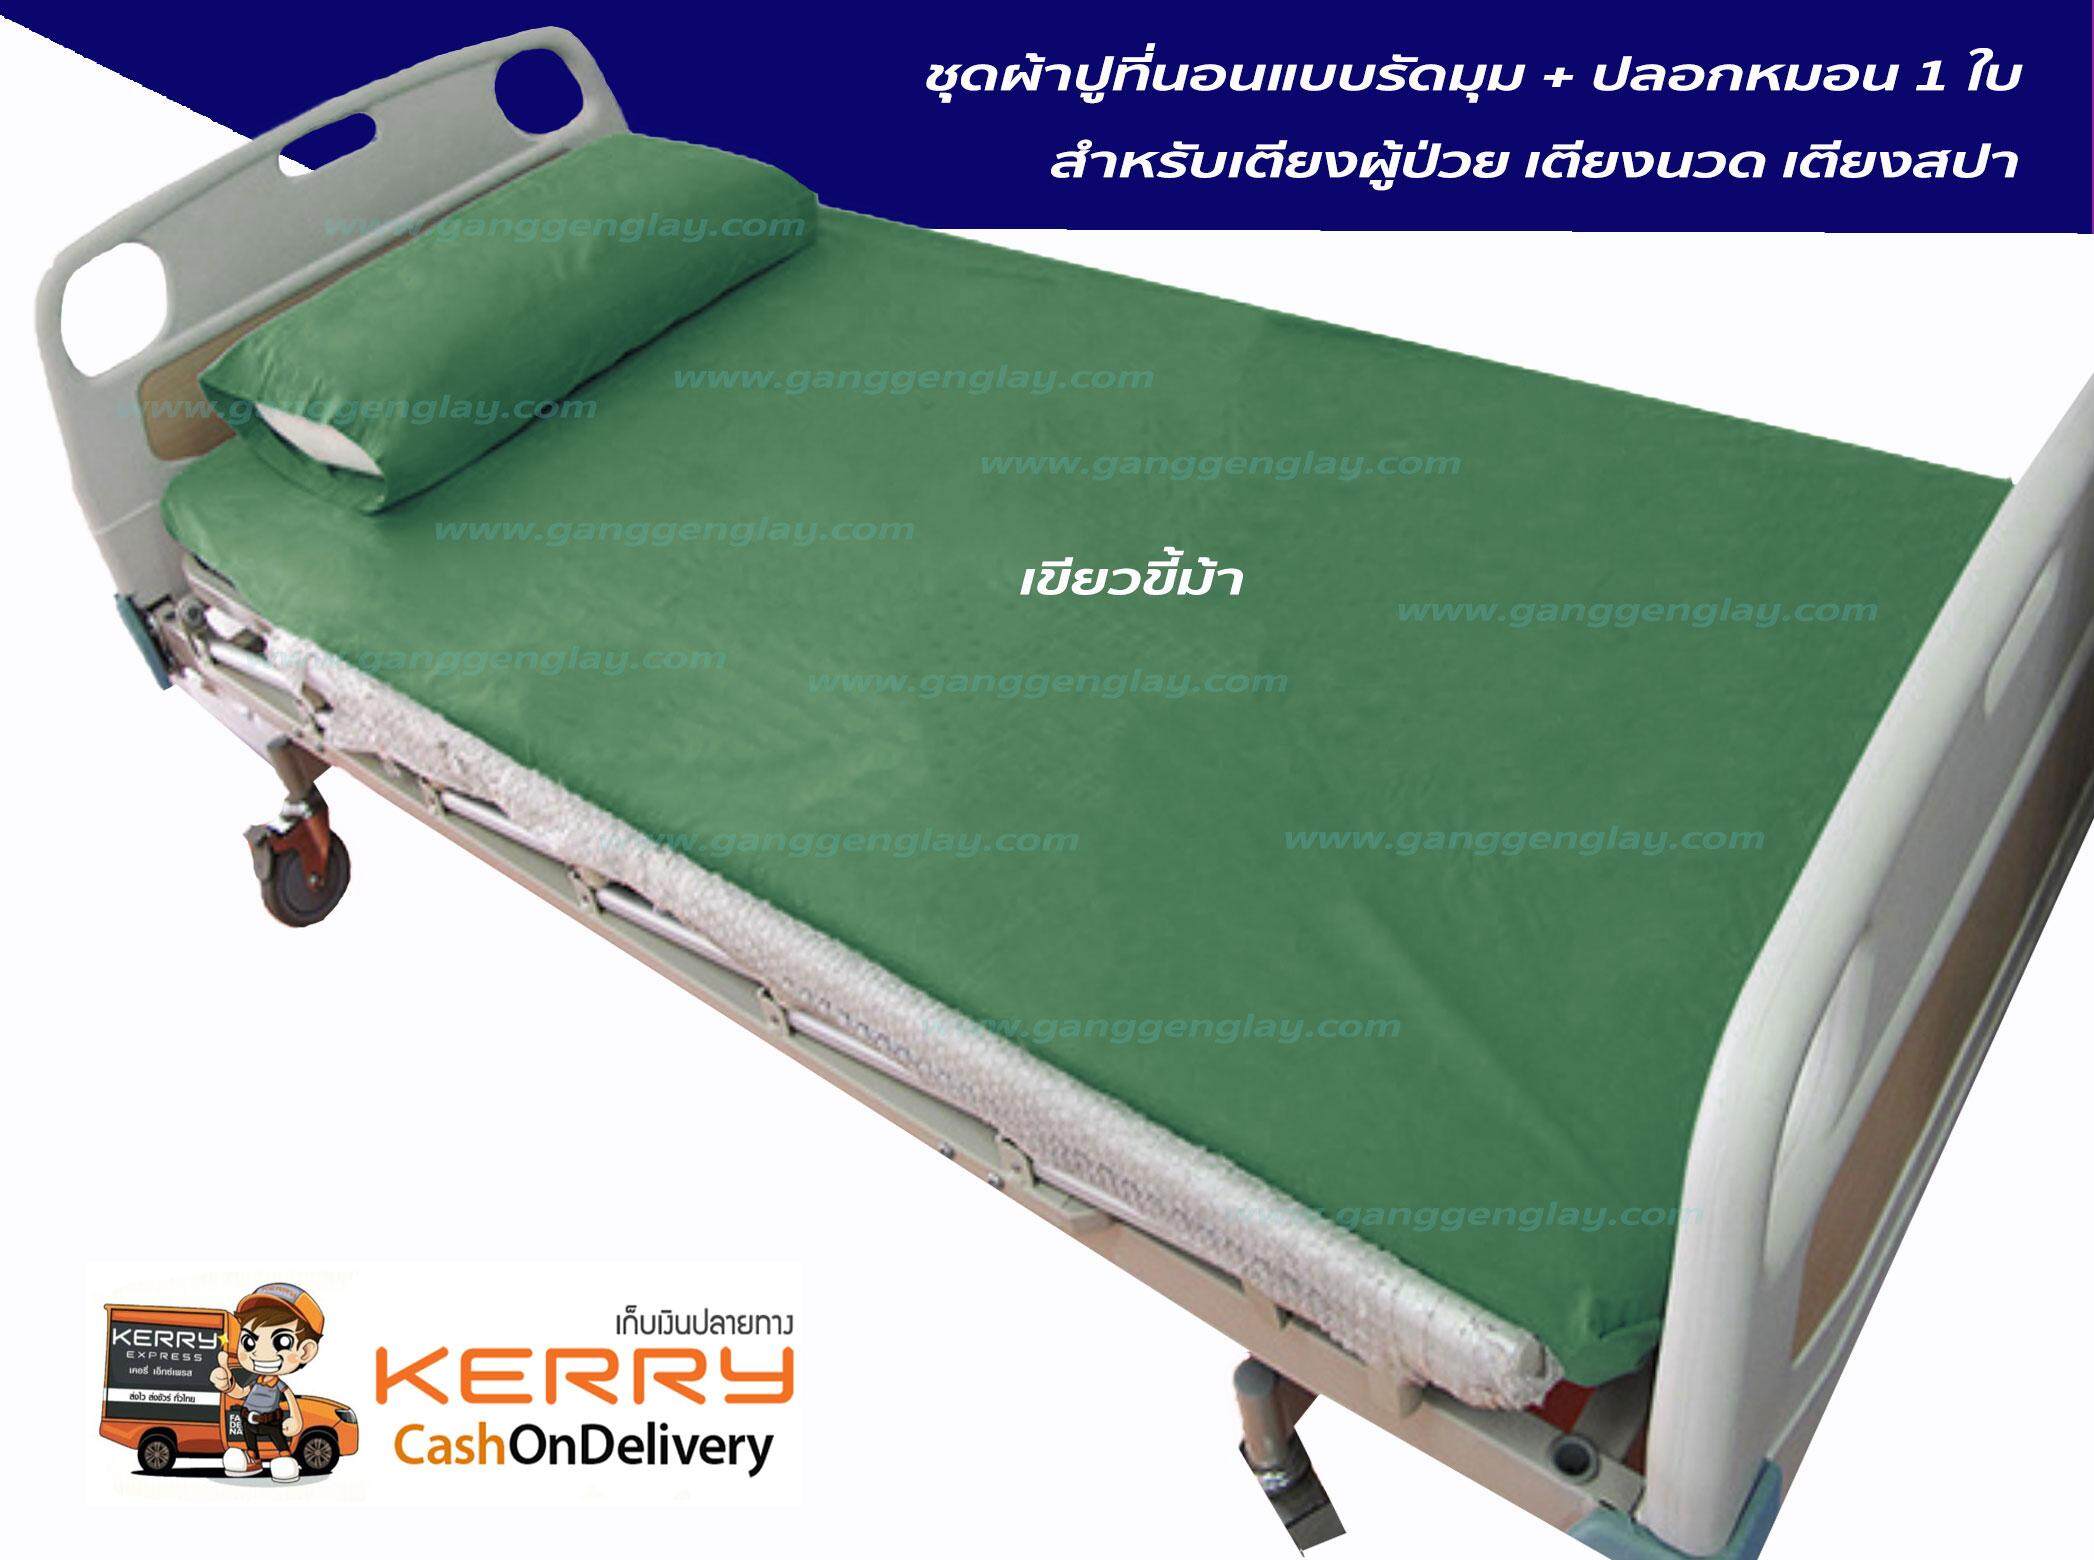 ผ้าปูที่นอน สำหรับเตียงผู้ป่วย เตียงนวด เตียงสปา + ปลอกหมอน 1 ใบ สีเขียวขี้ม้า